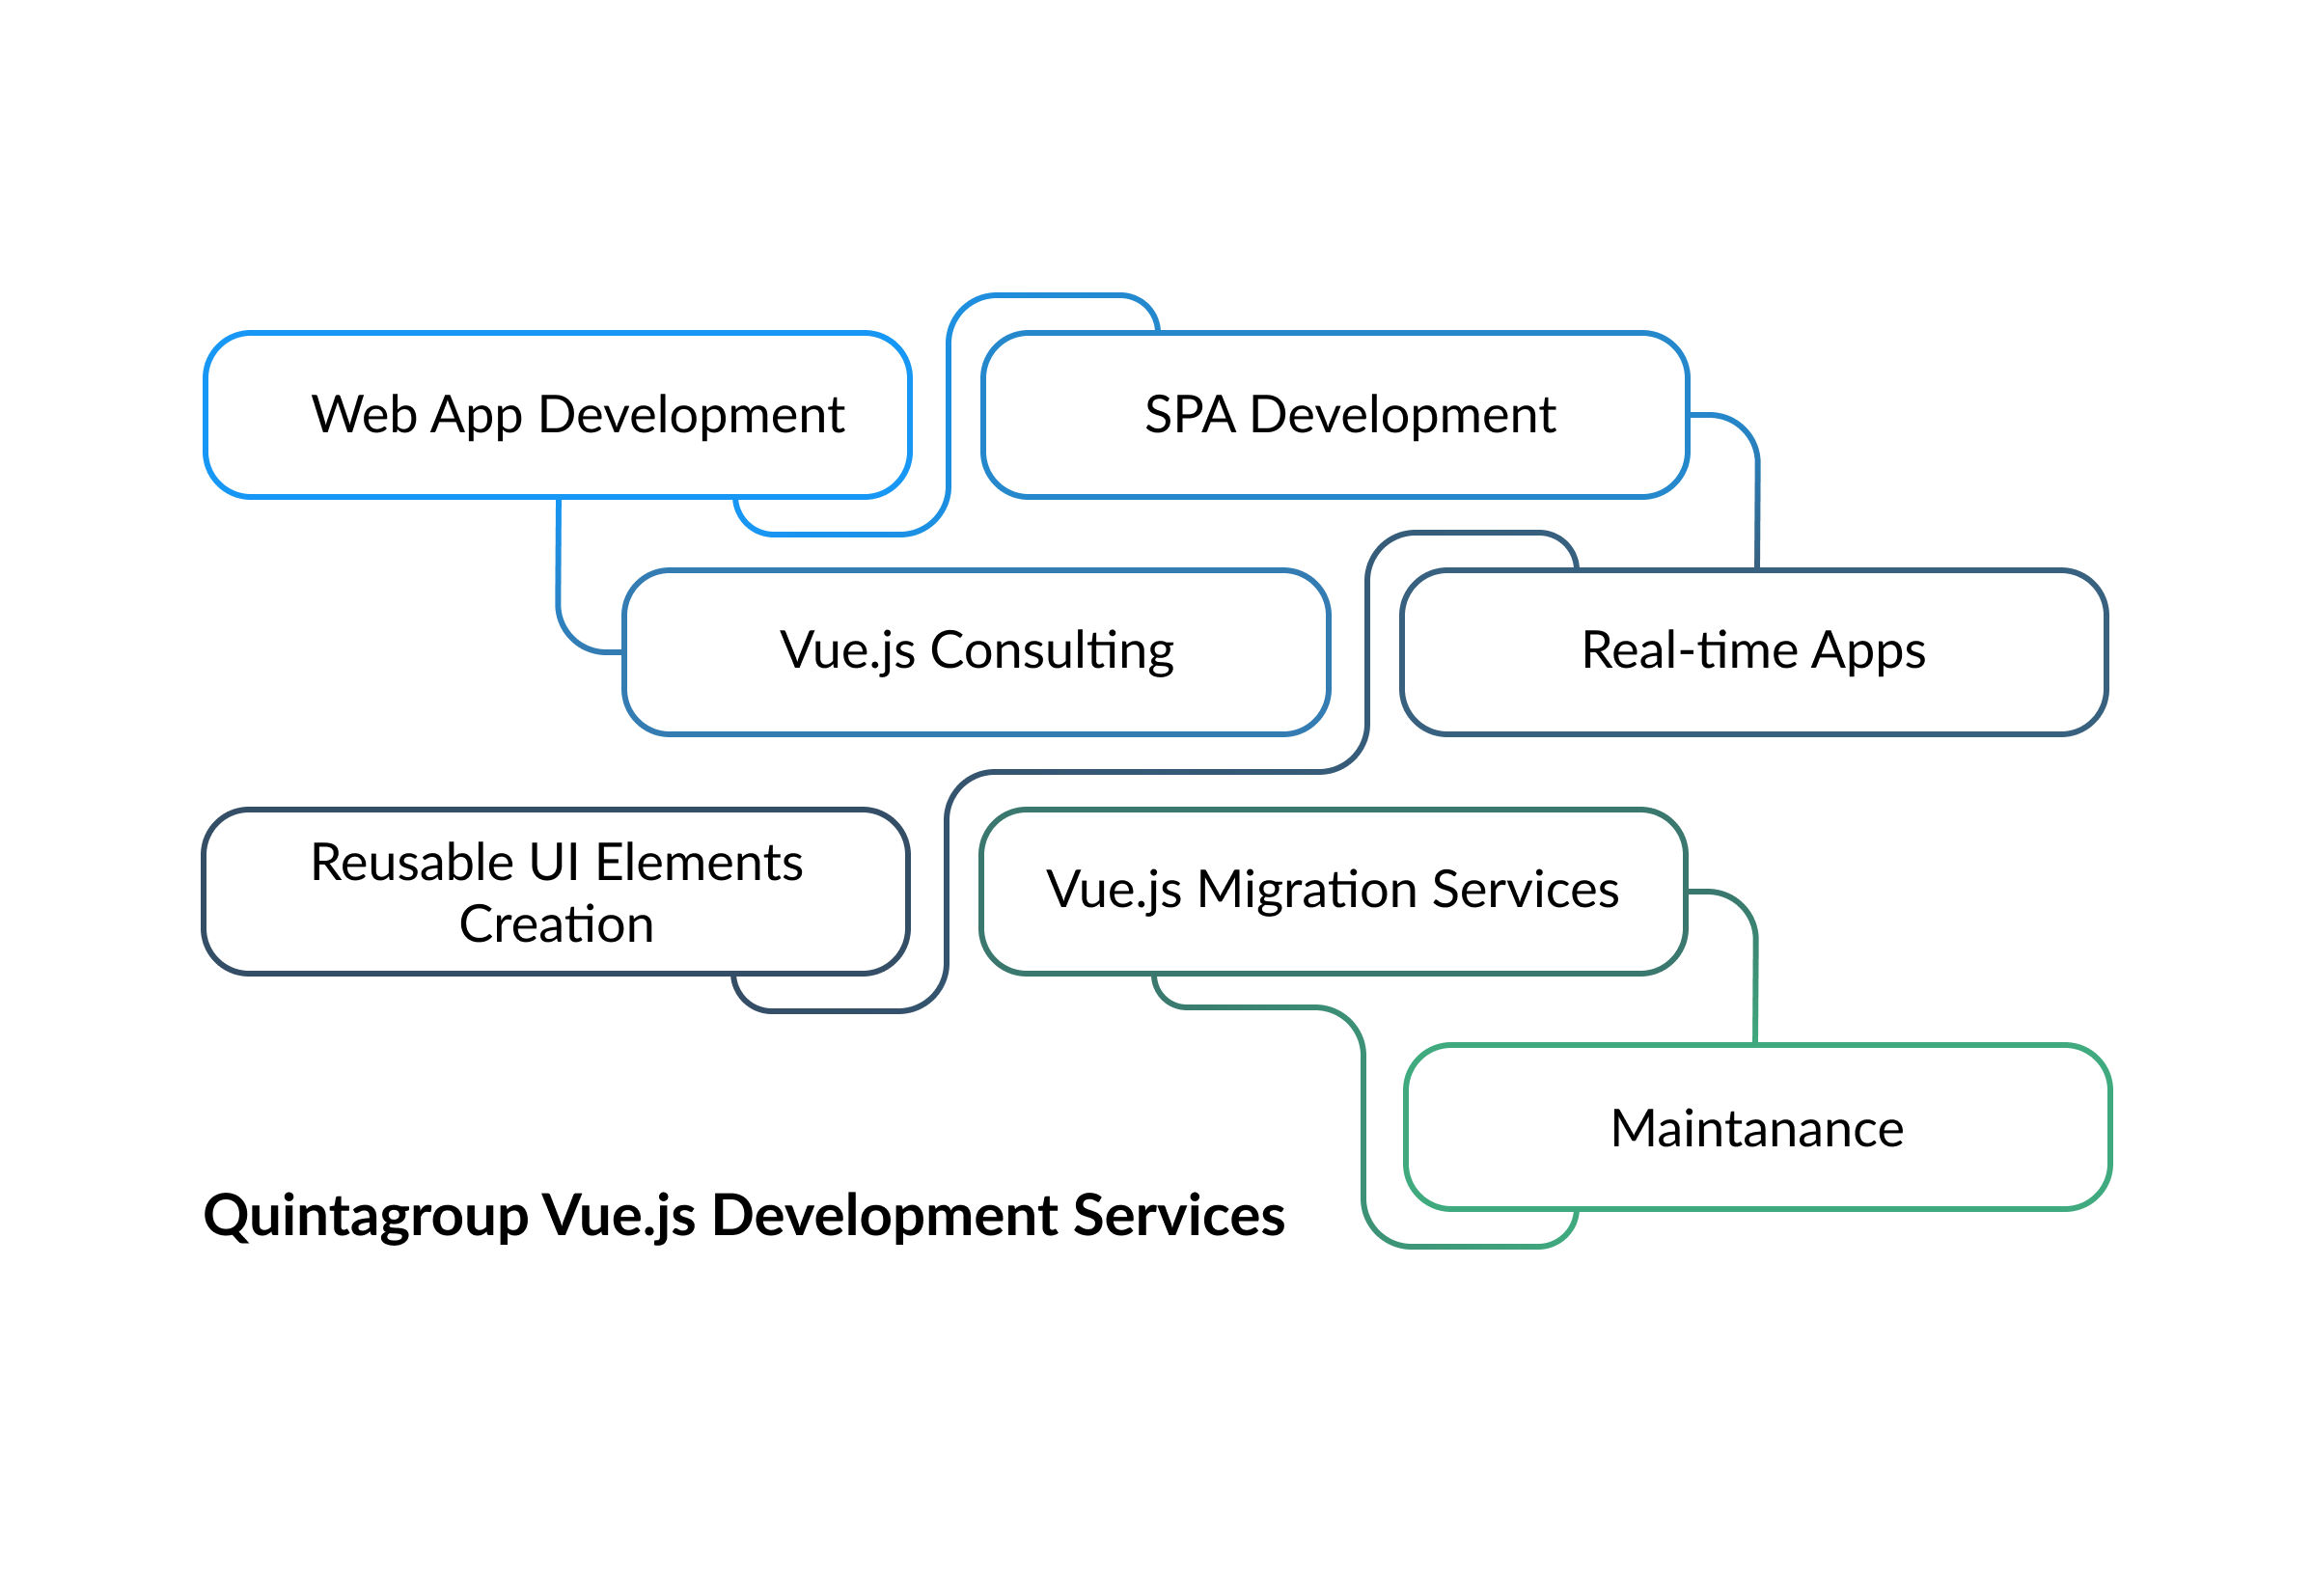 Quintagroup vue.js development services